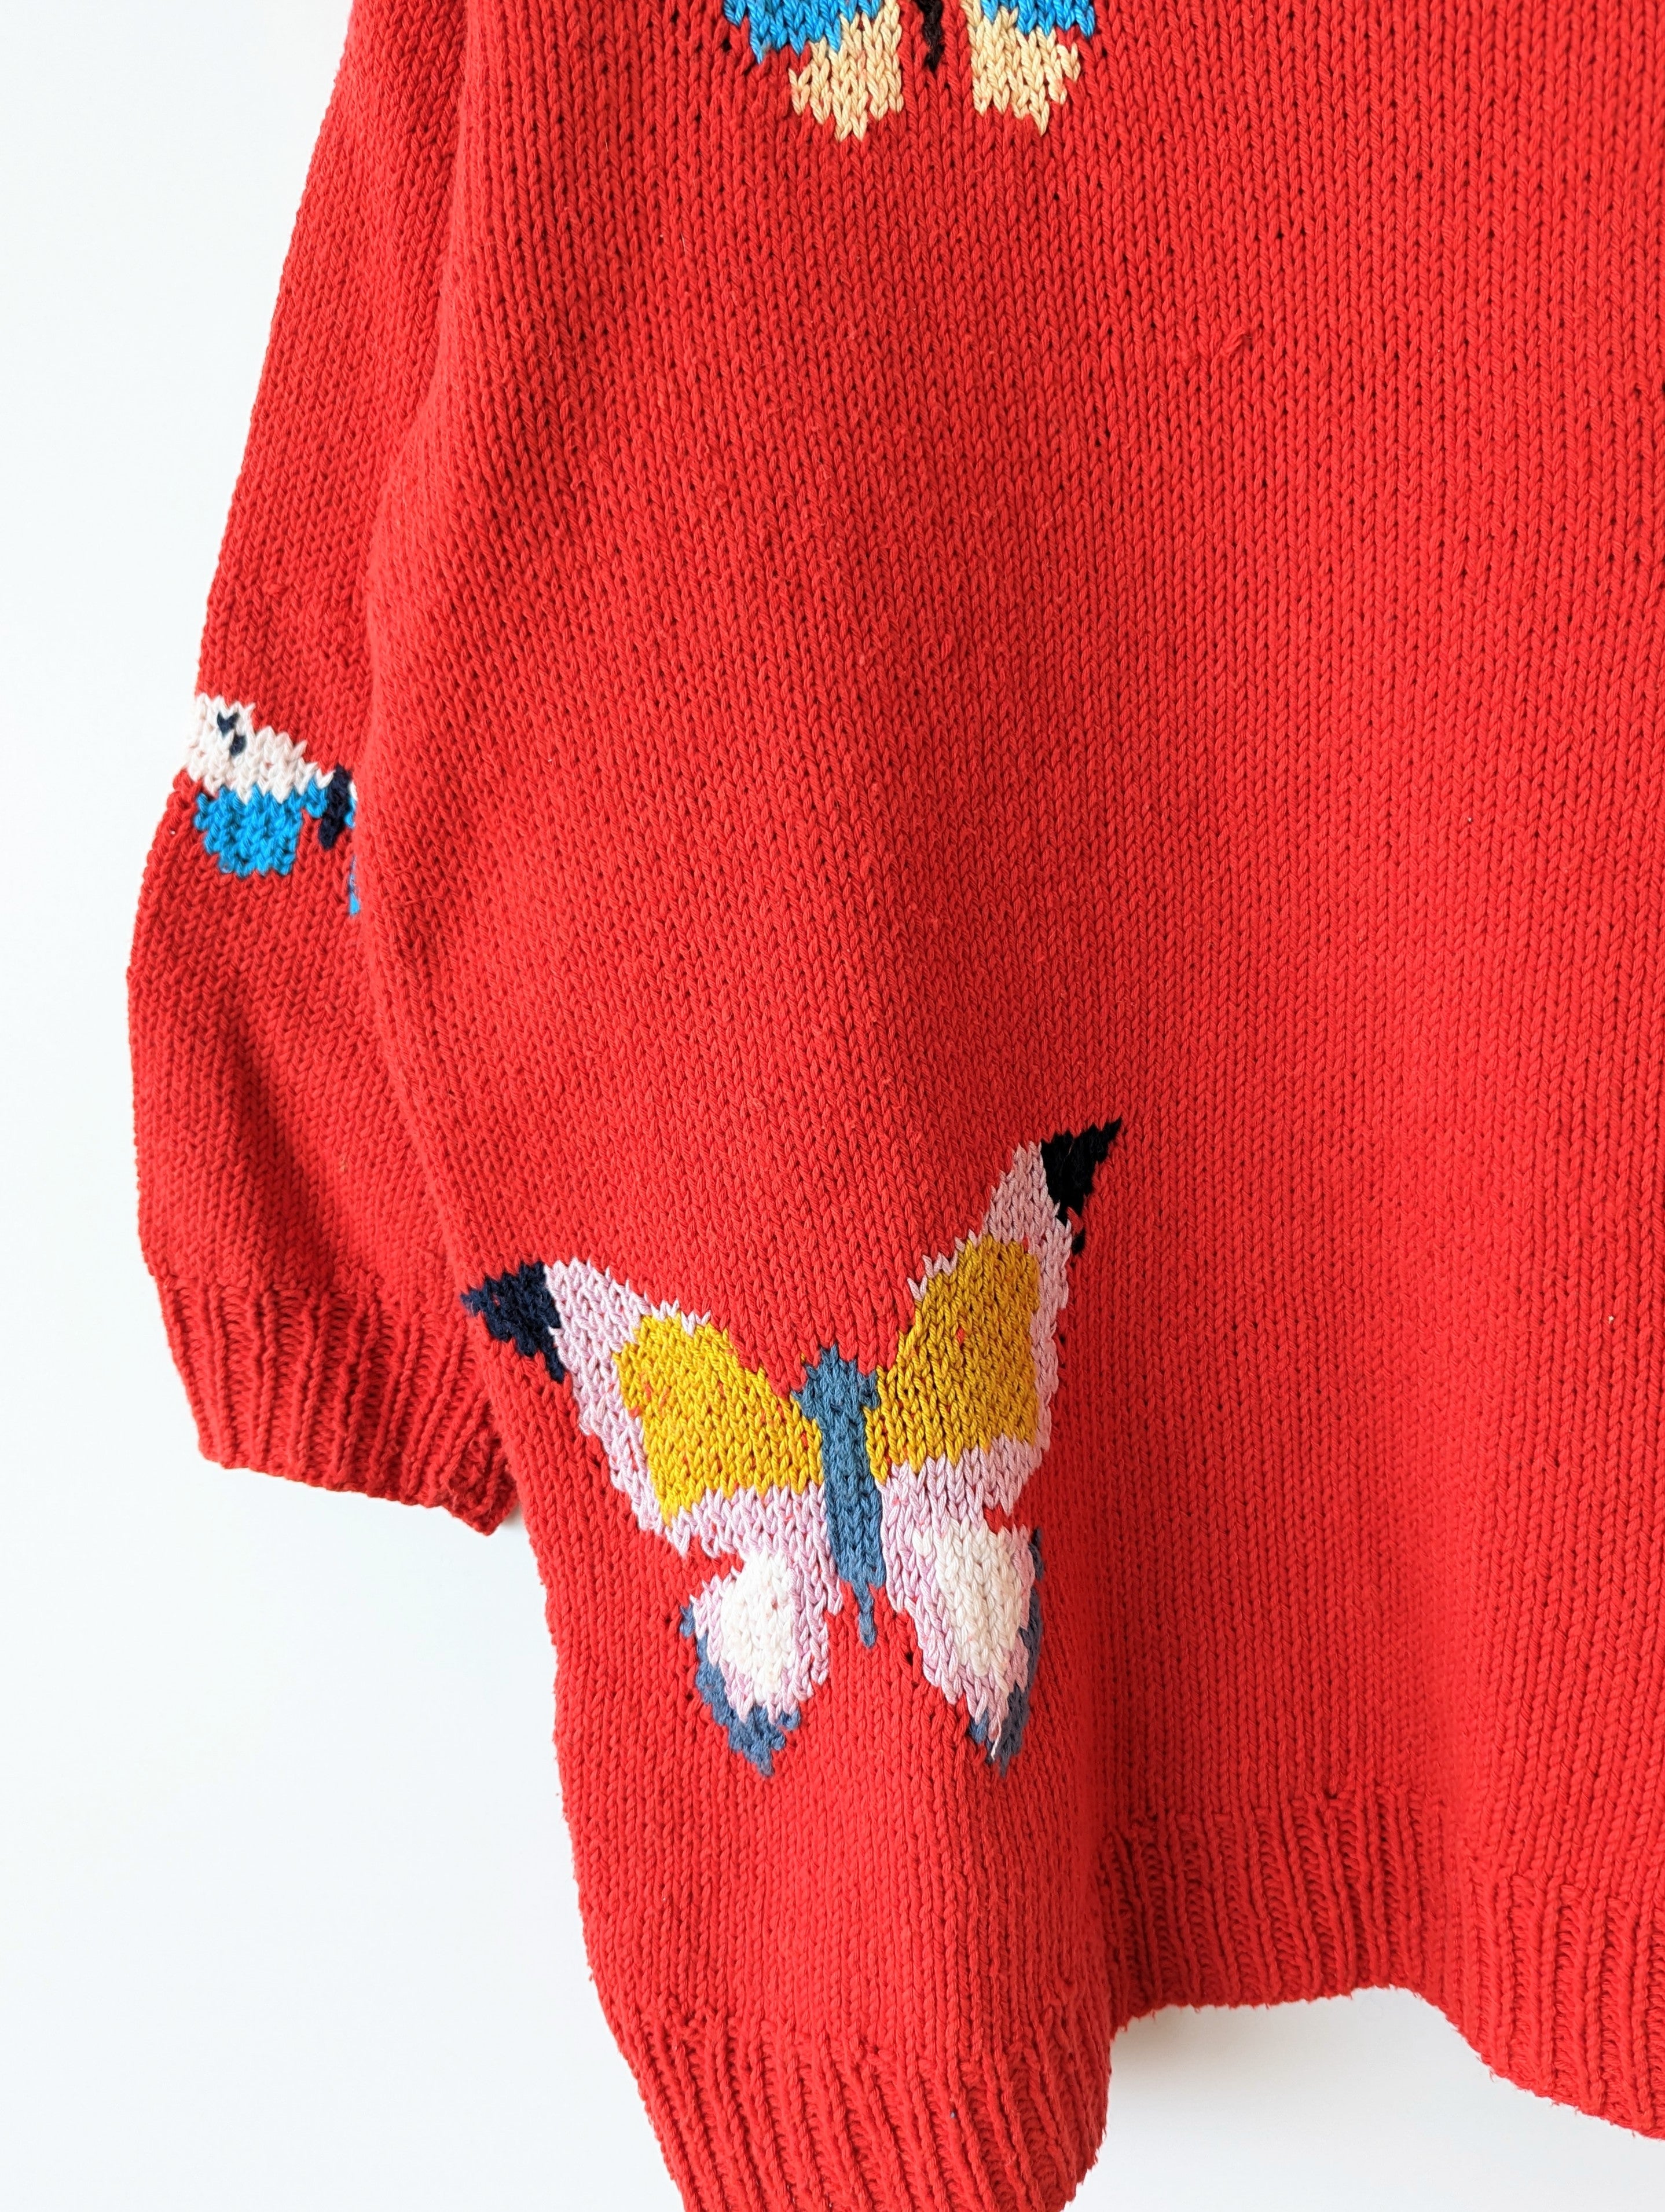 *Handmade* Pullover Schmetterling Strickmuster Heavin (M-L)